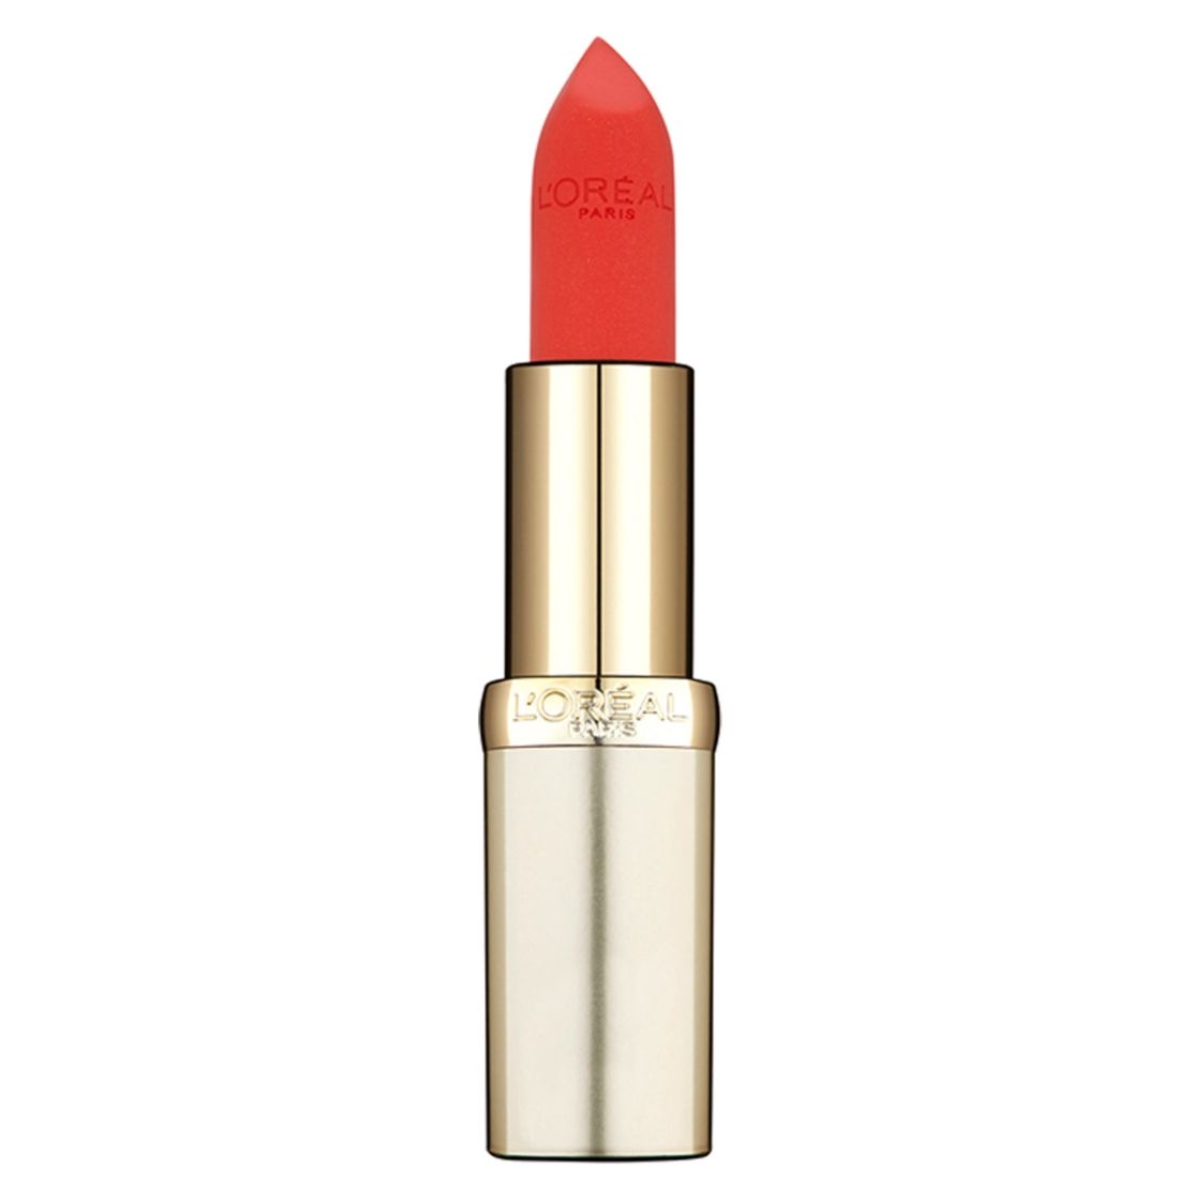 L'Oreal Paris Color Riche Satin Lipstick in 373 Magnetic Coral